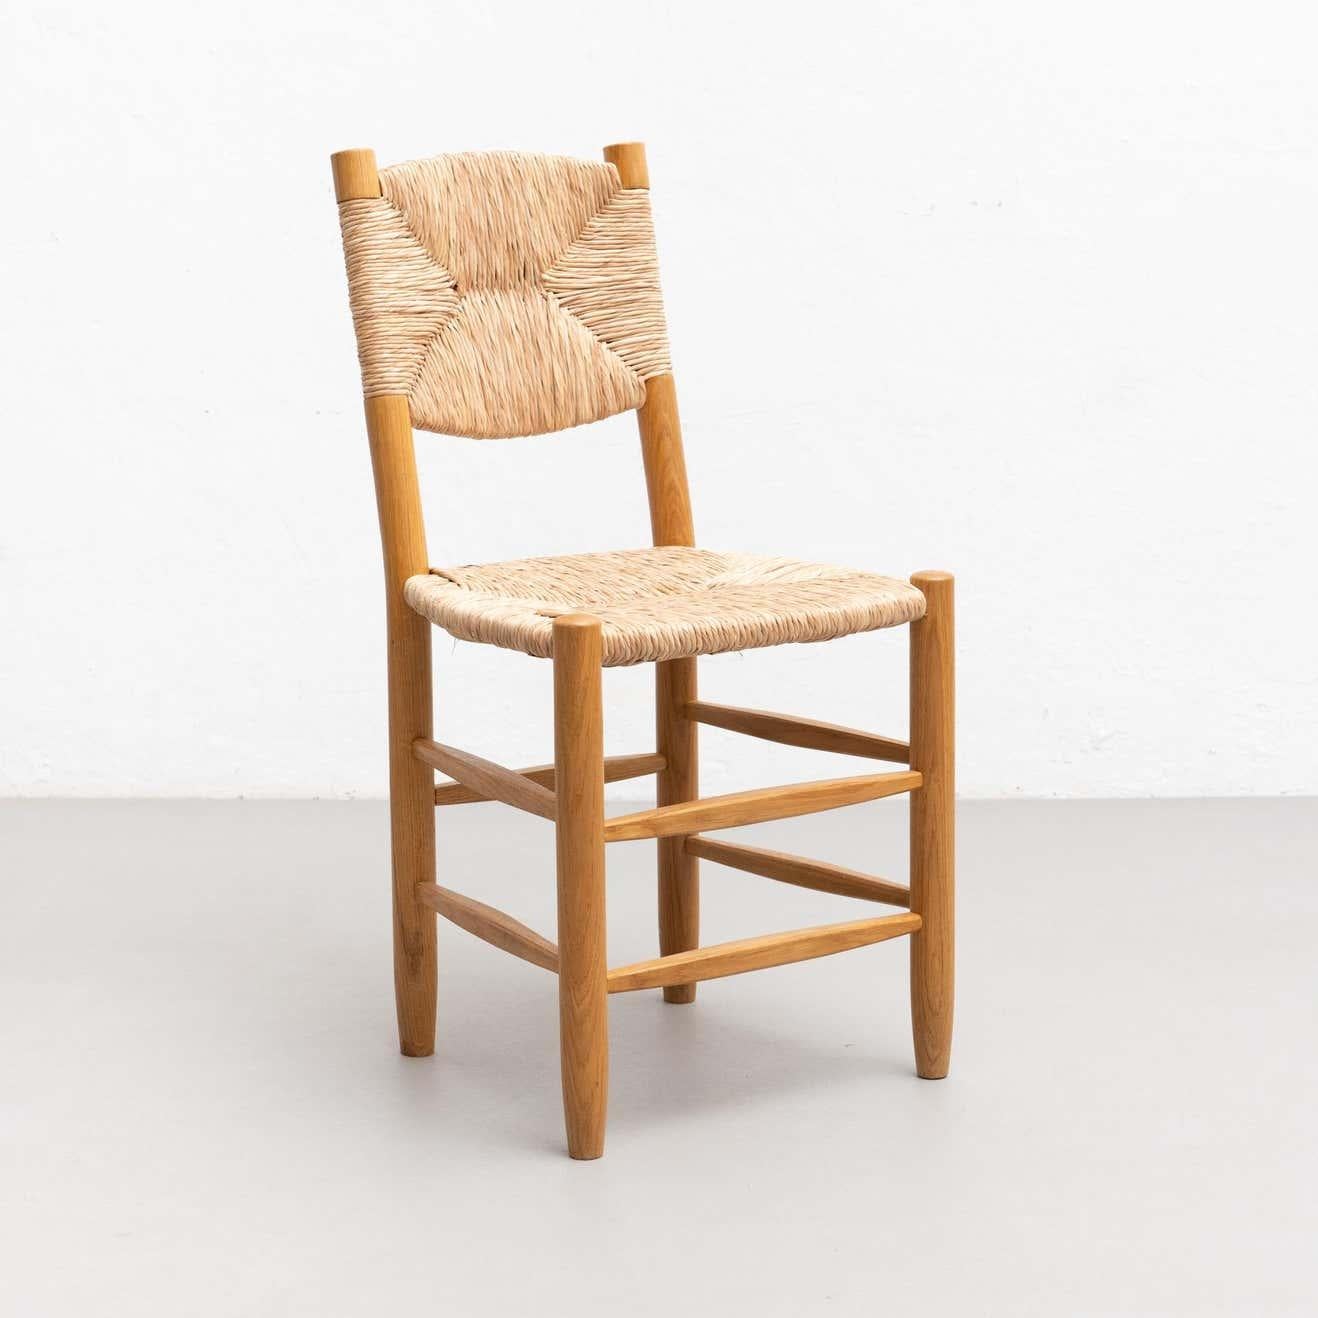 Stuhl im Stil von Charlotte Perriand, unbekannter Hersteller, um 1980.

Holz und Rattan.

In gutem Originalzustand mit geringen alters- und gebrauchsbedingten Abnutzungserscheinungen, die eine schöne Patina erhalten haben.